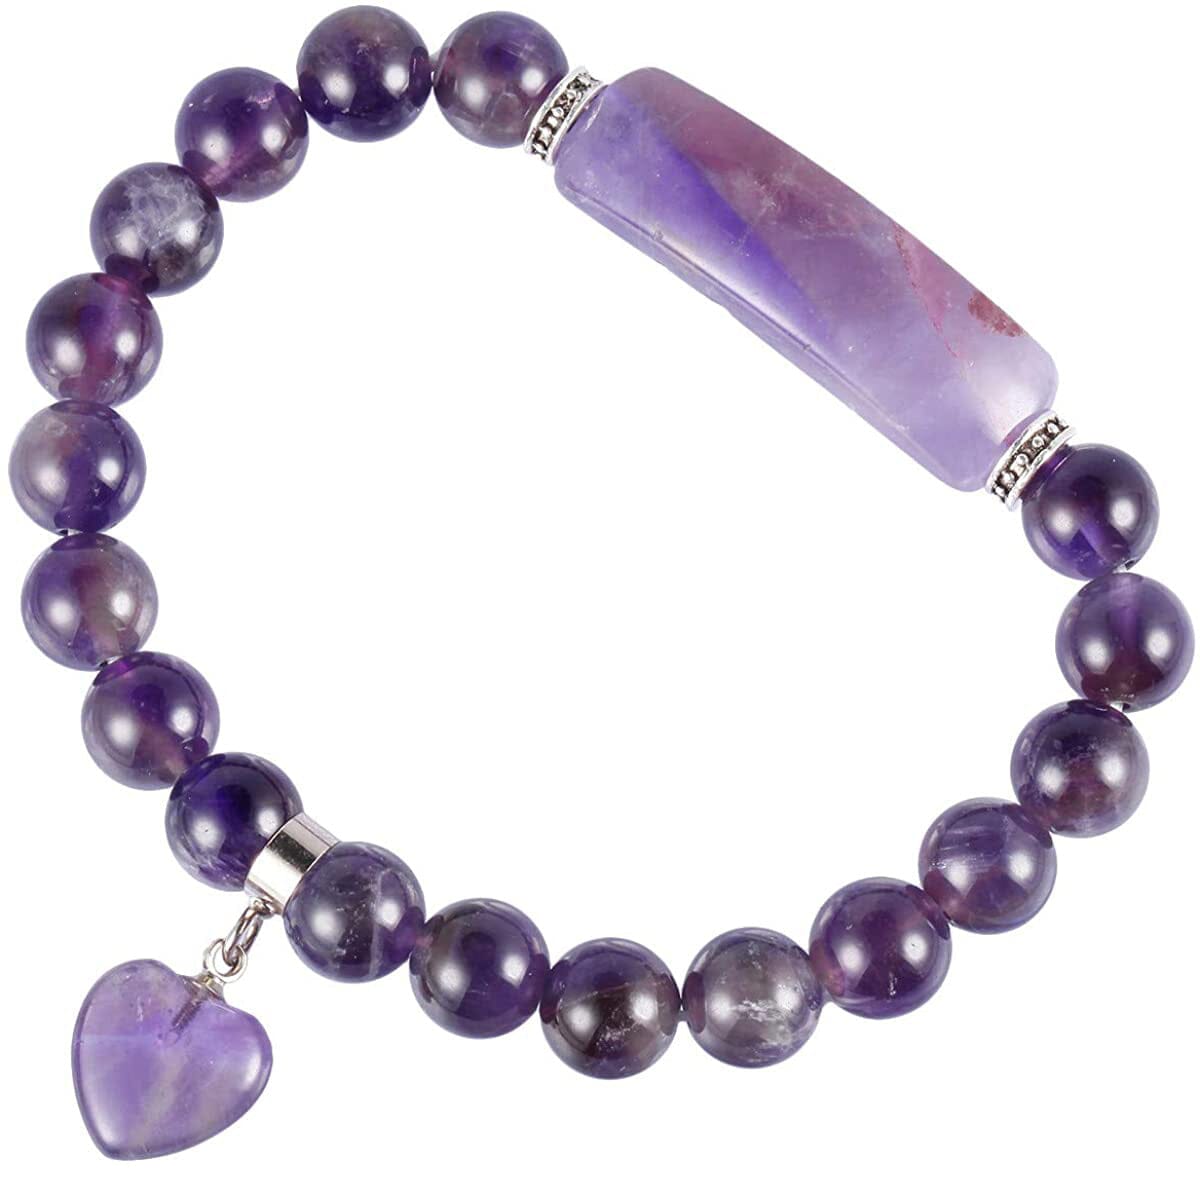 Healing Bead Amethyst Crystal Bracelet